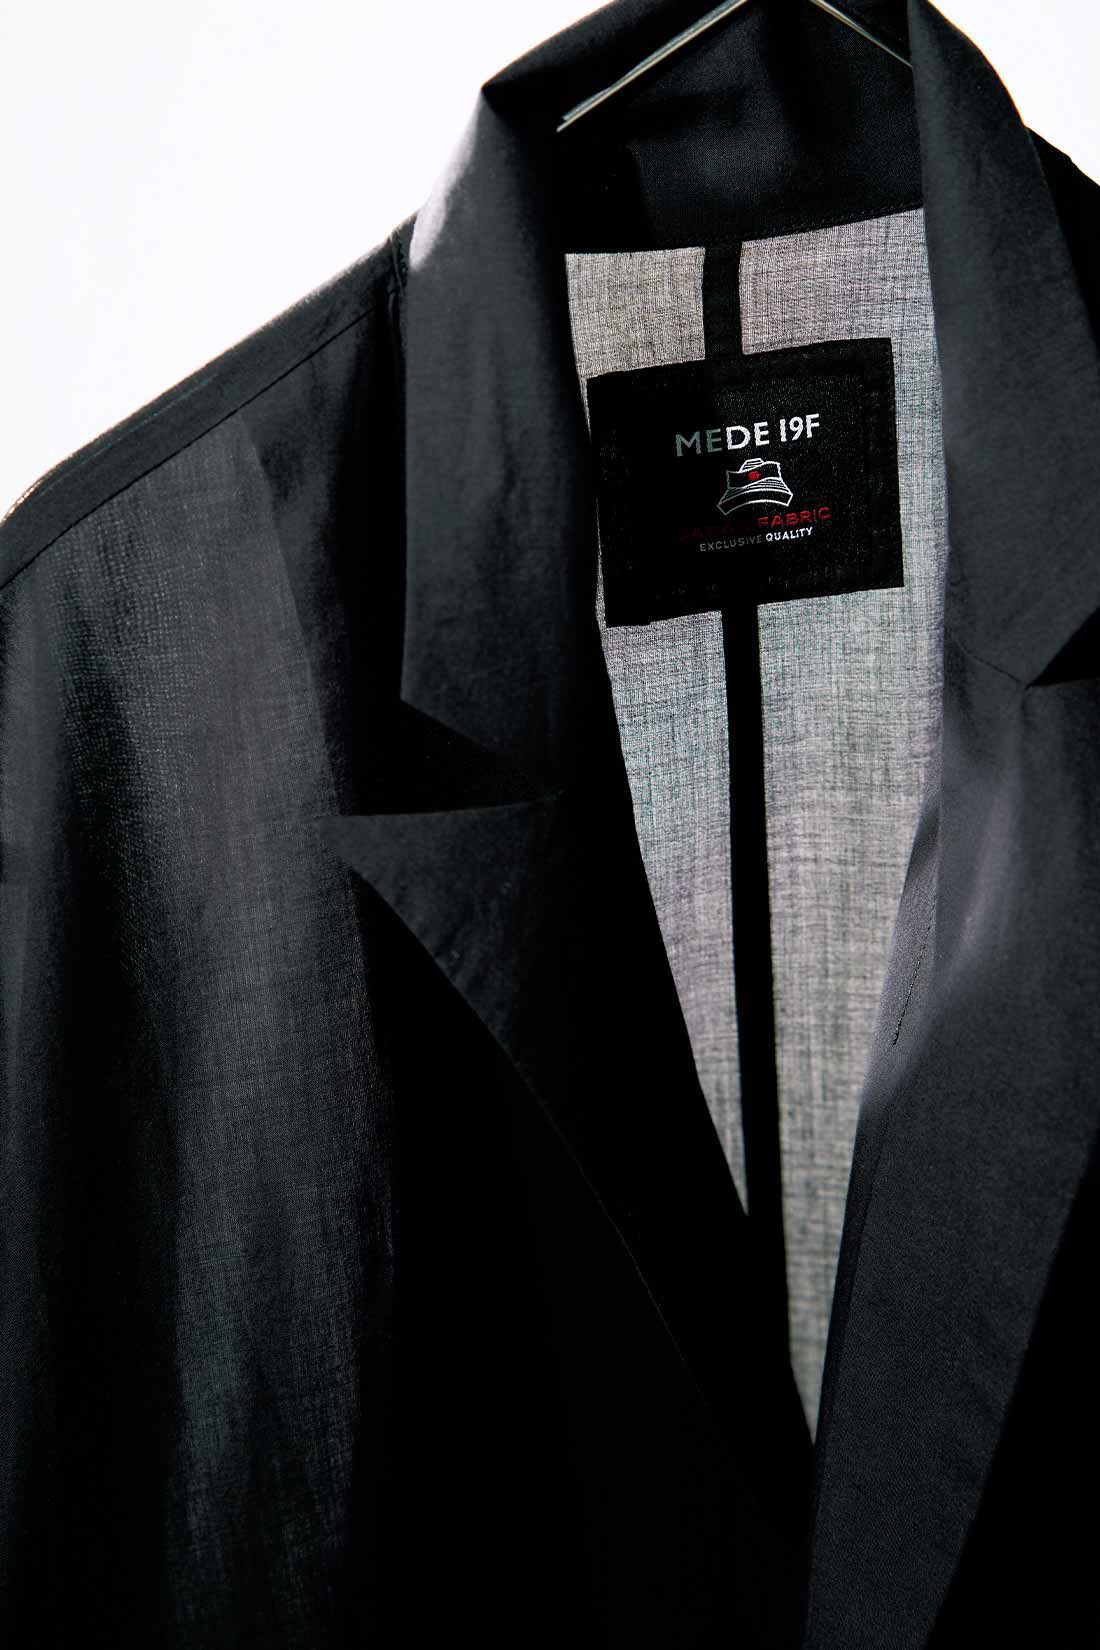 MEDE19F|MEDE19F　日陰をまとう リラックスダブルジャケット〈ブラック〉|綿100％で繊細な趣のある「ハケ目」生地。高密度な織りで薄手ながら張りがあり、透け感も上品。洗いざらしのまま着てもいい雰囲気です。